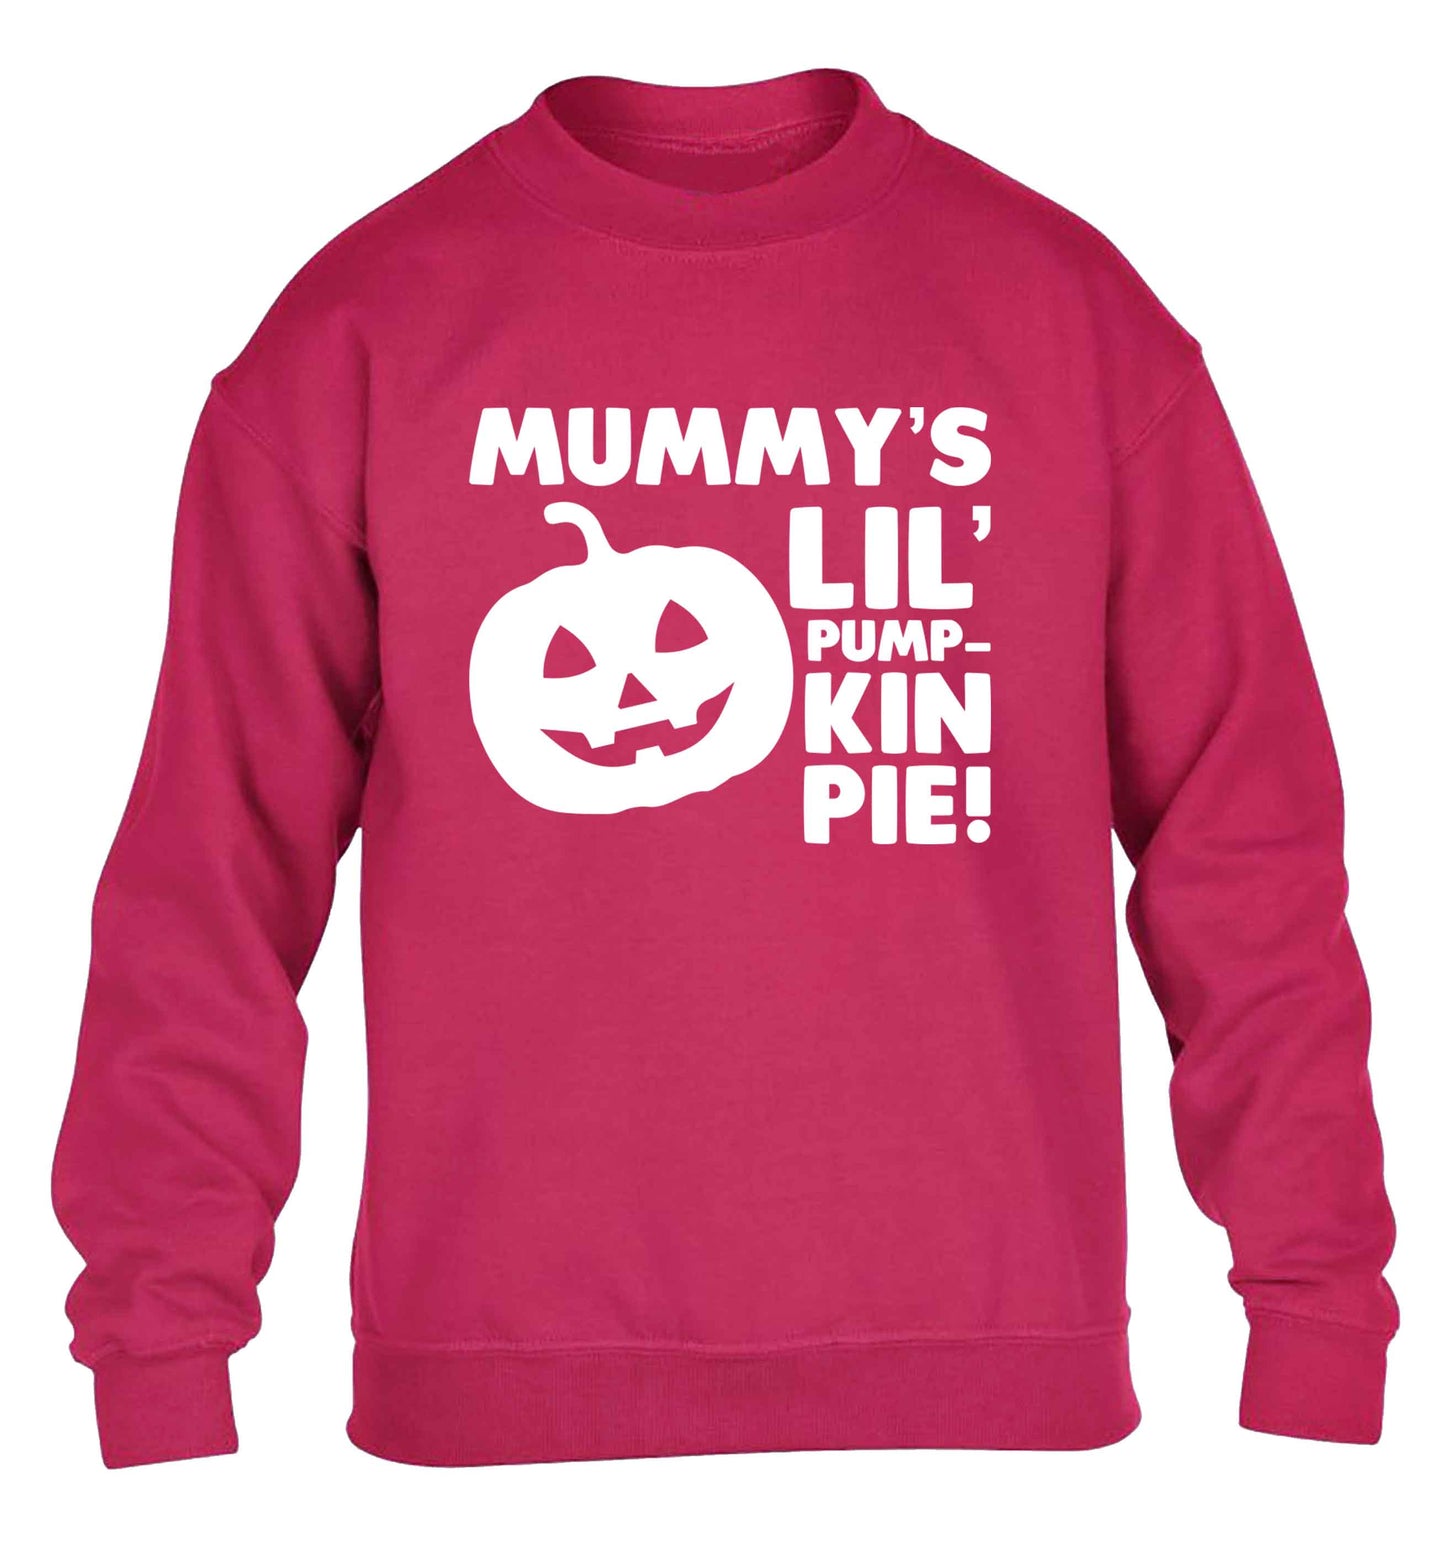 Mummy's lil' pumpkin pie children's pink sweater 12-13 Years